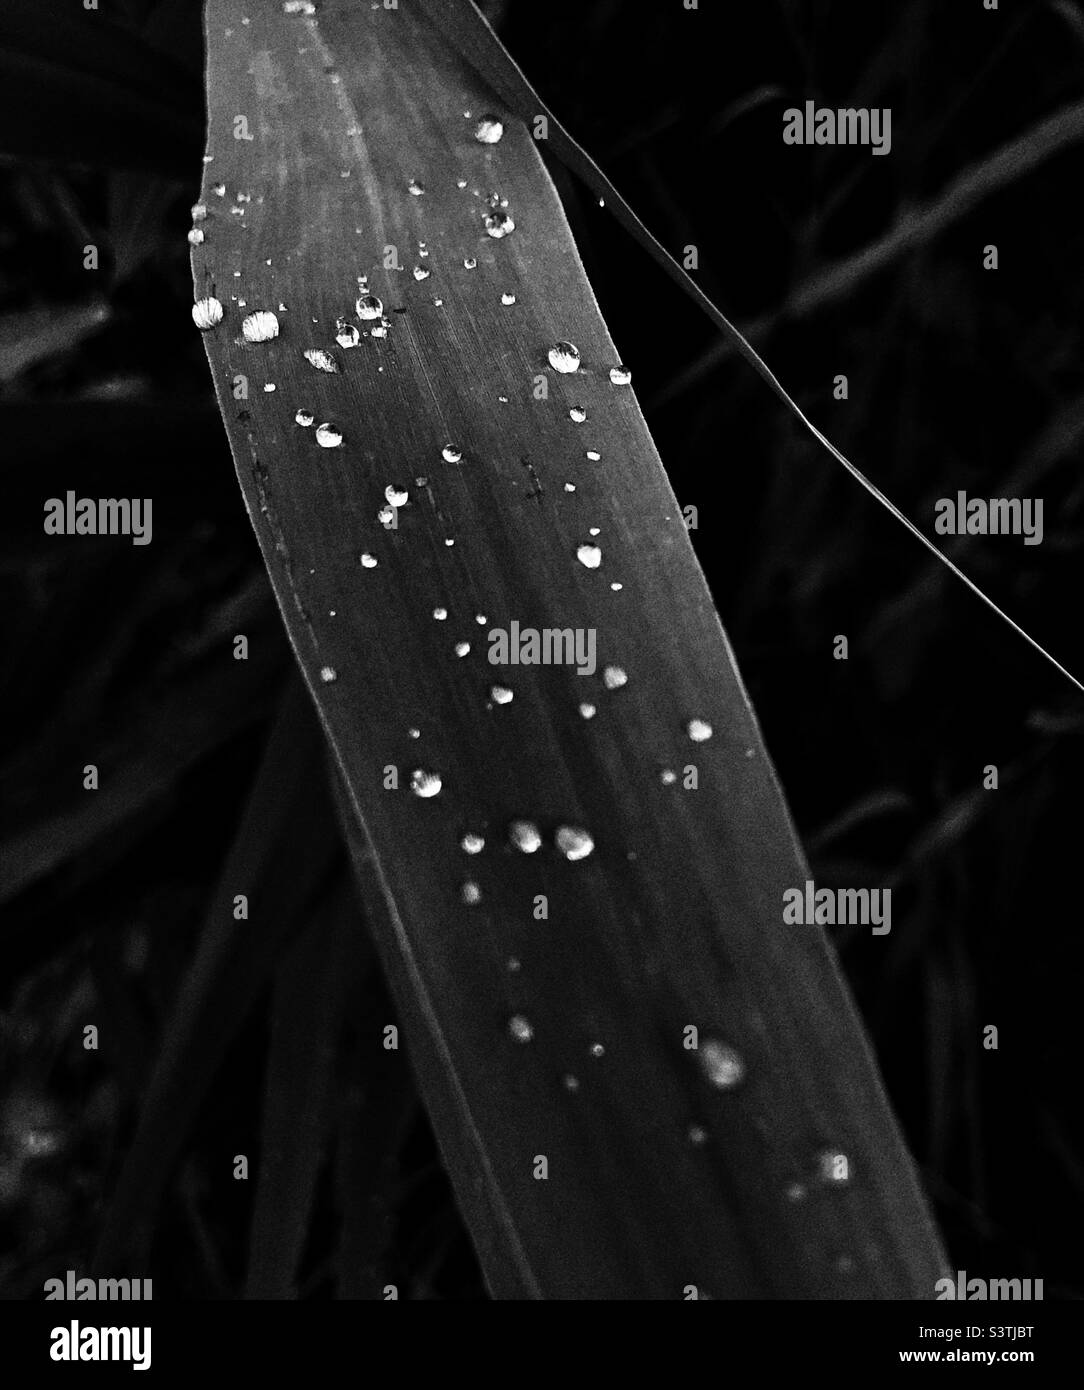 Image abstraite en noir et blanc d'une herbe avec des gouttes de pluie Banque D'Images